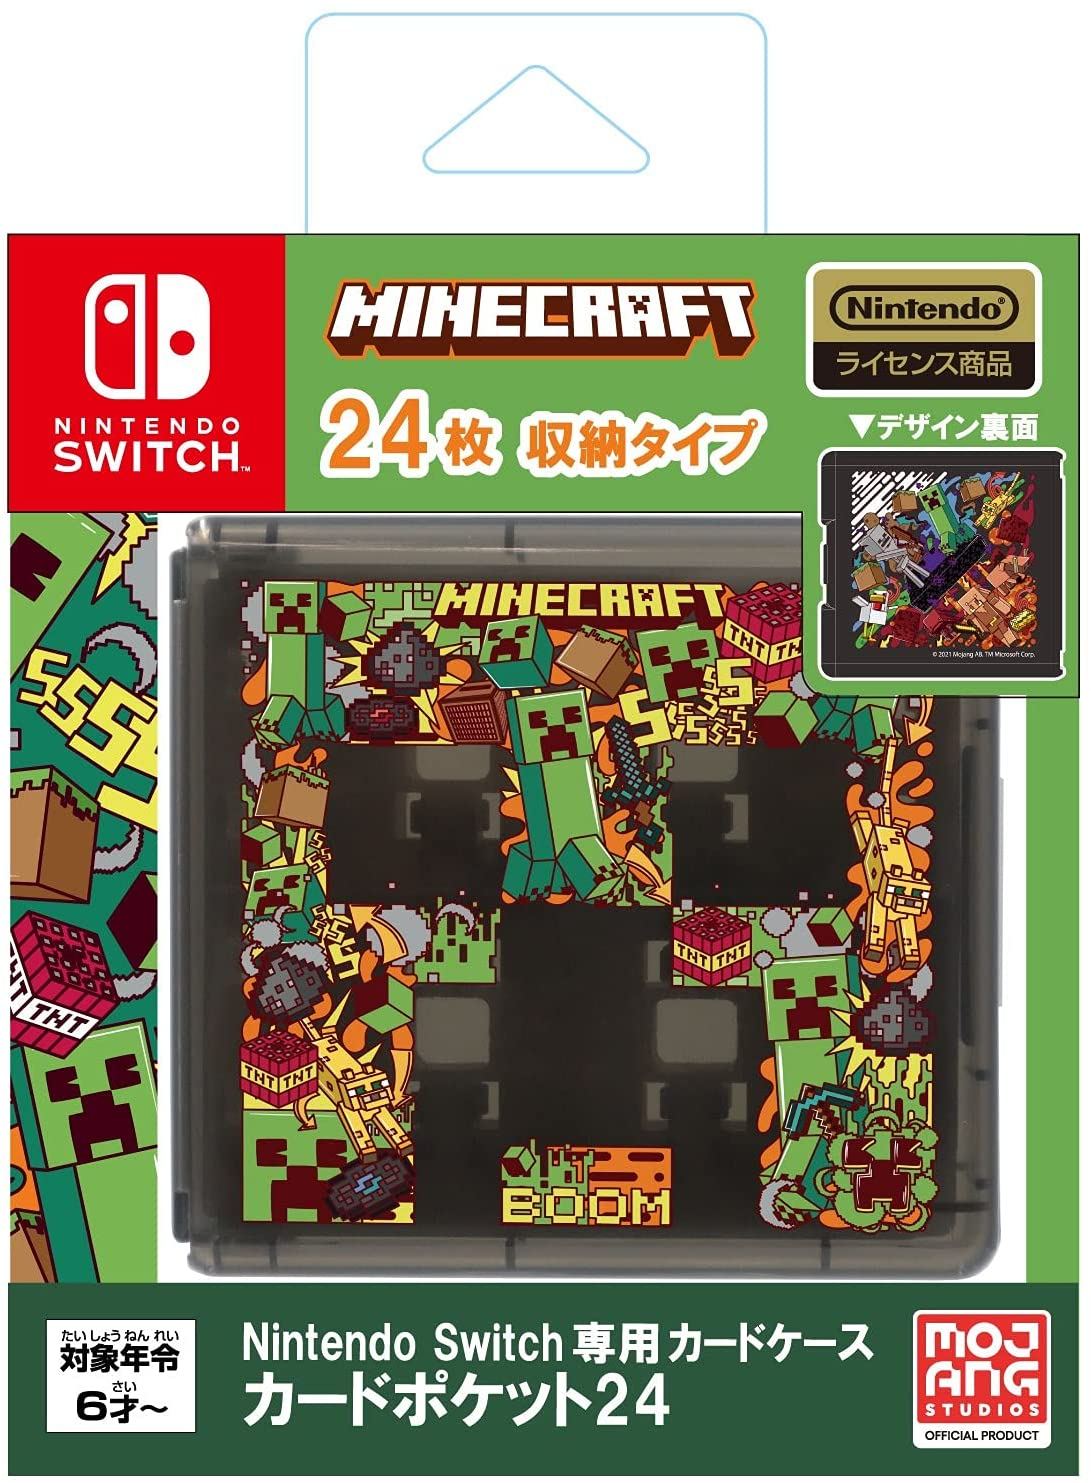 Minecraft-Offres de jeux Nintendo Switch, carte fongique